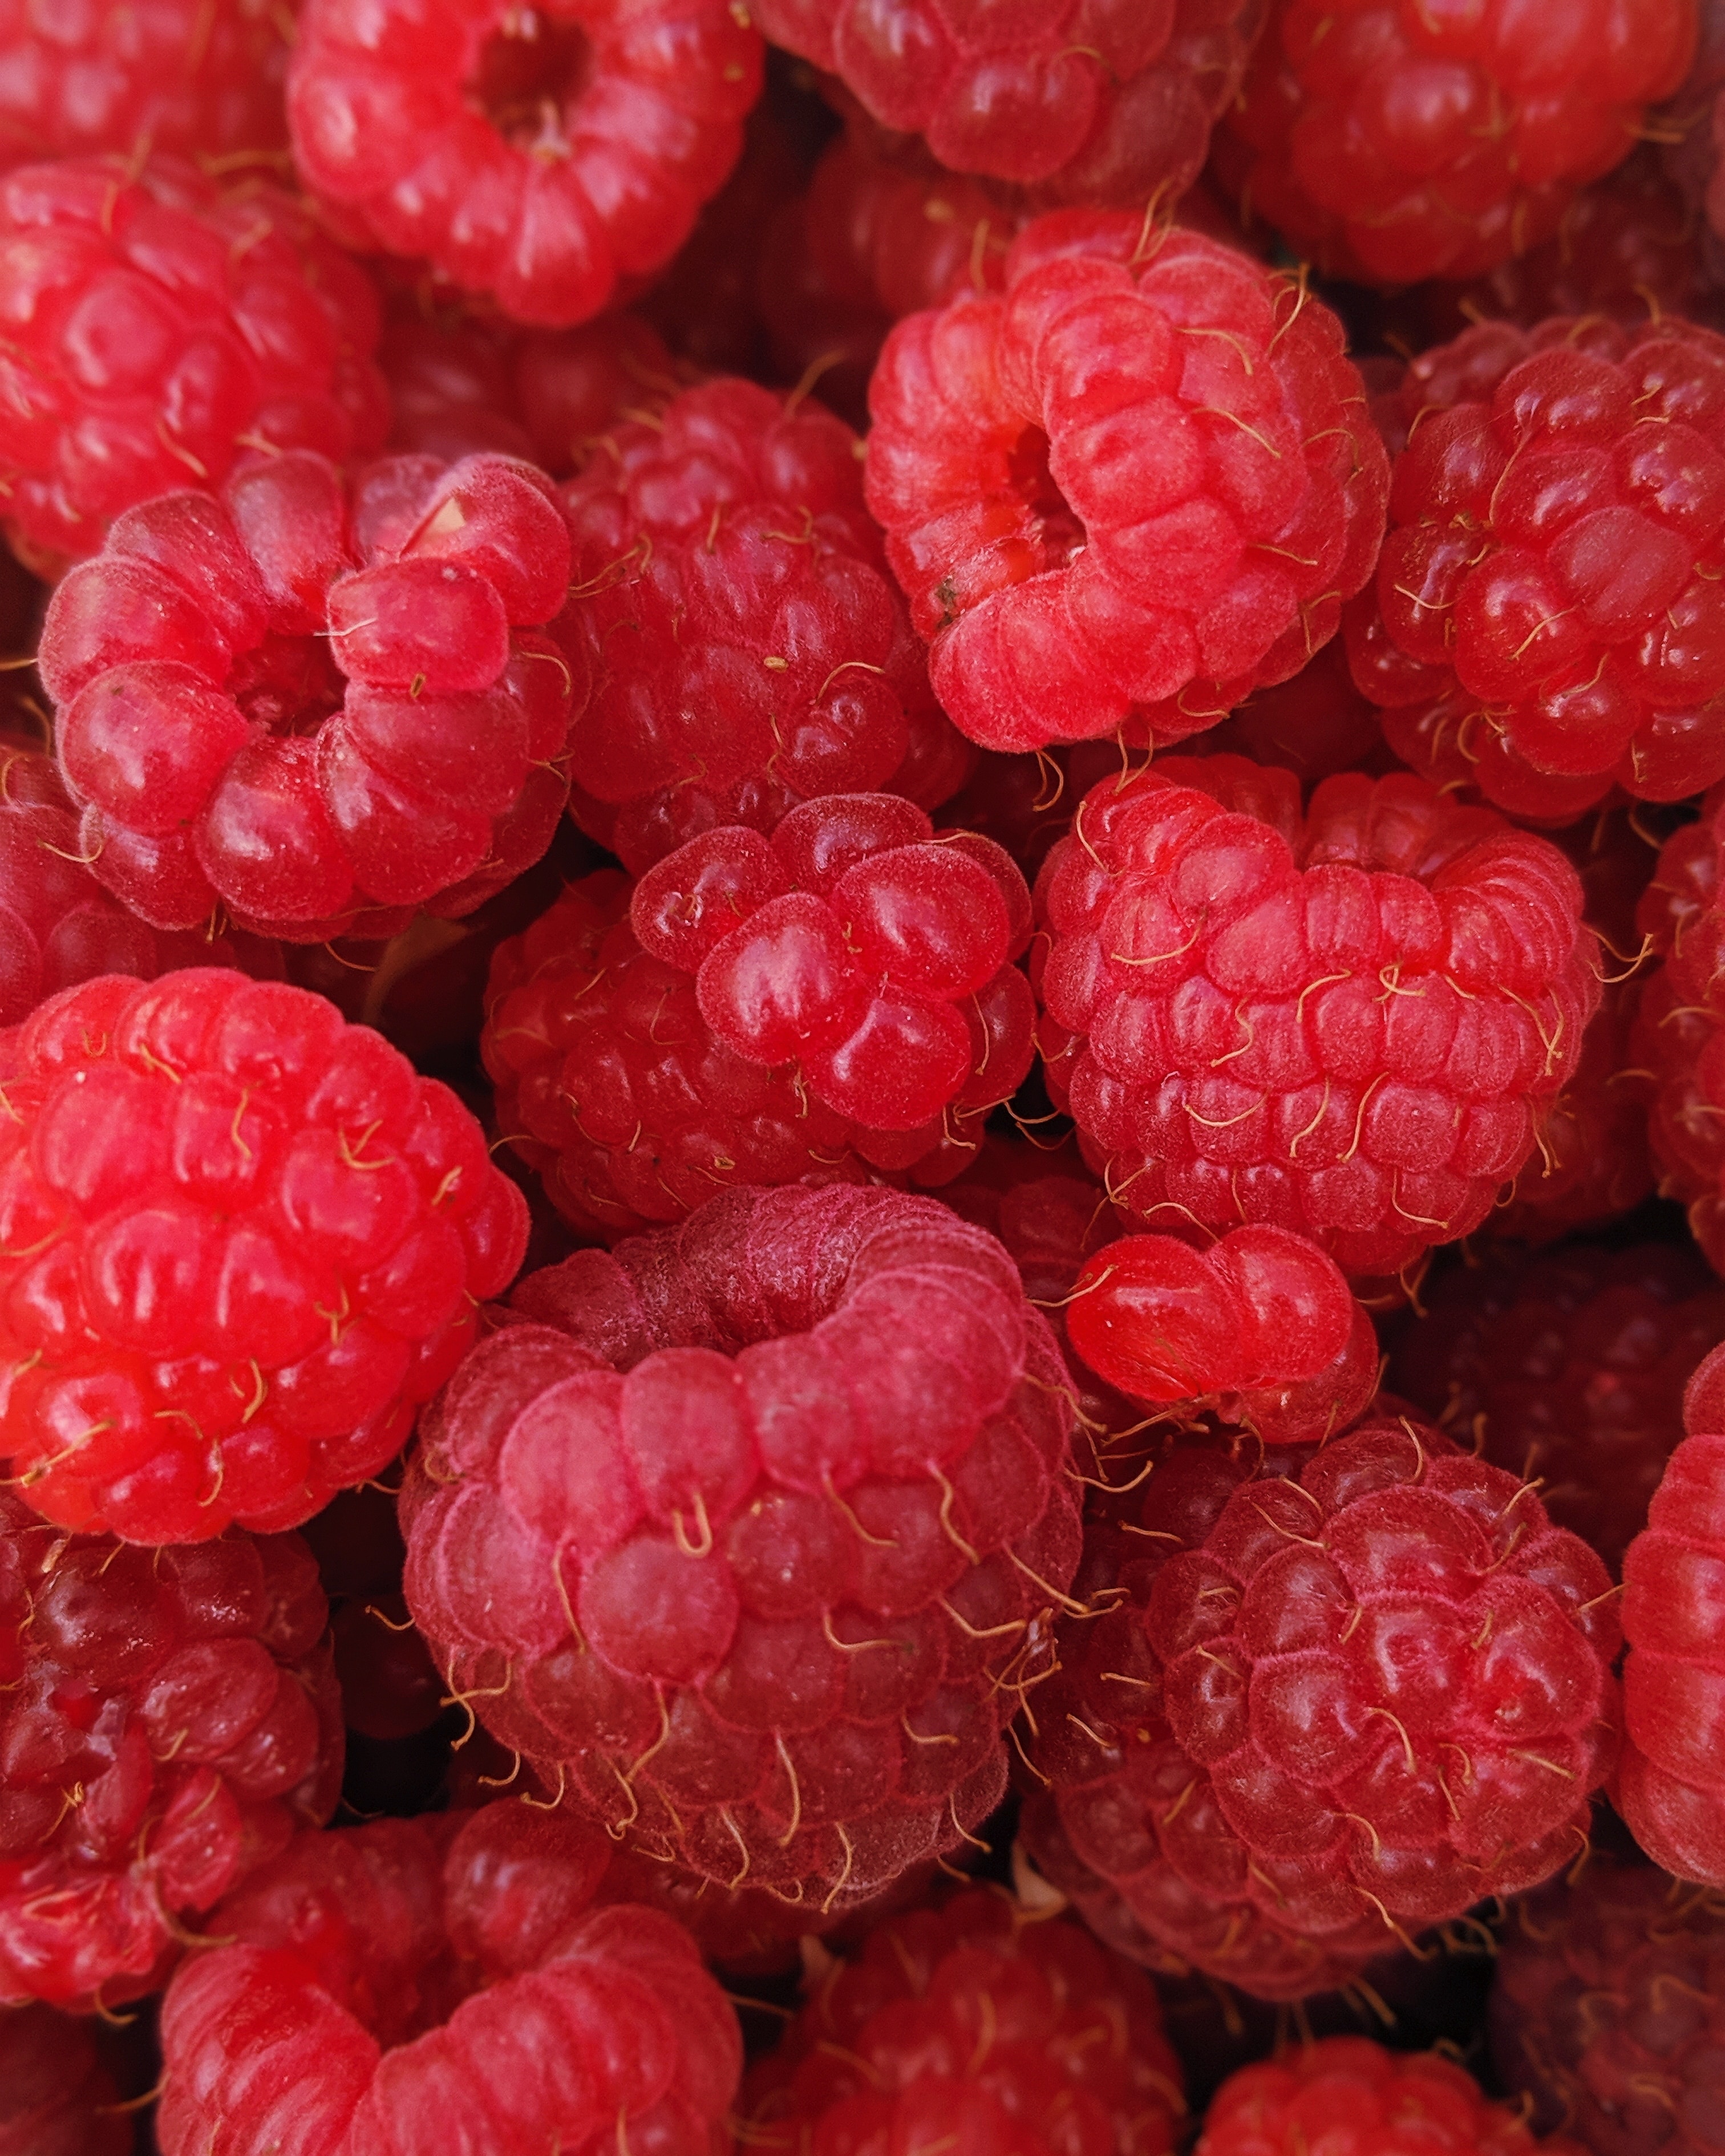 Raspberry clafoutis